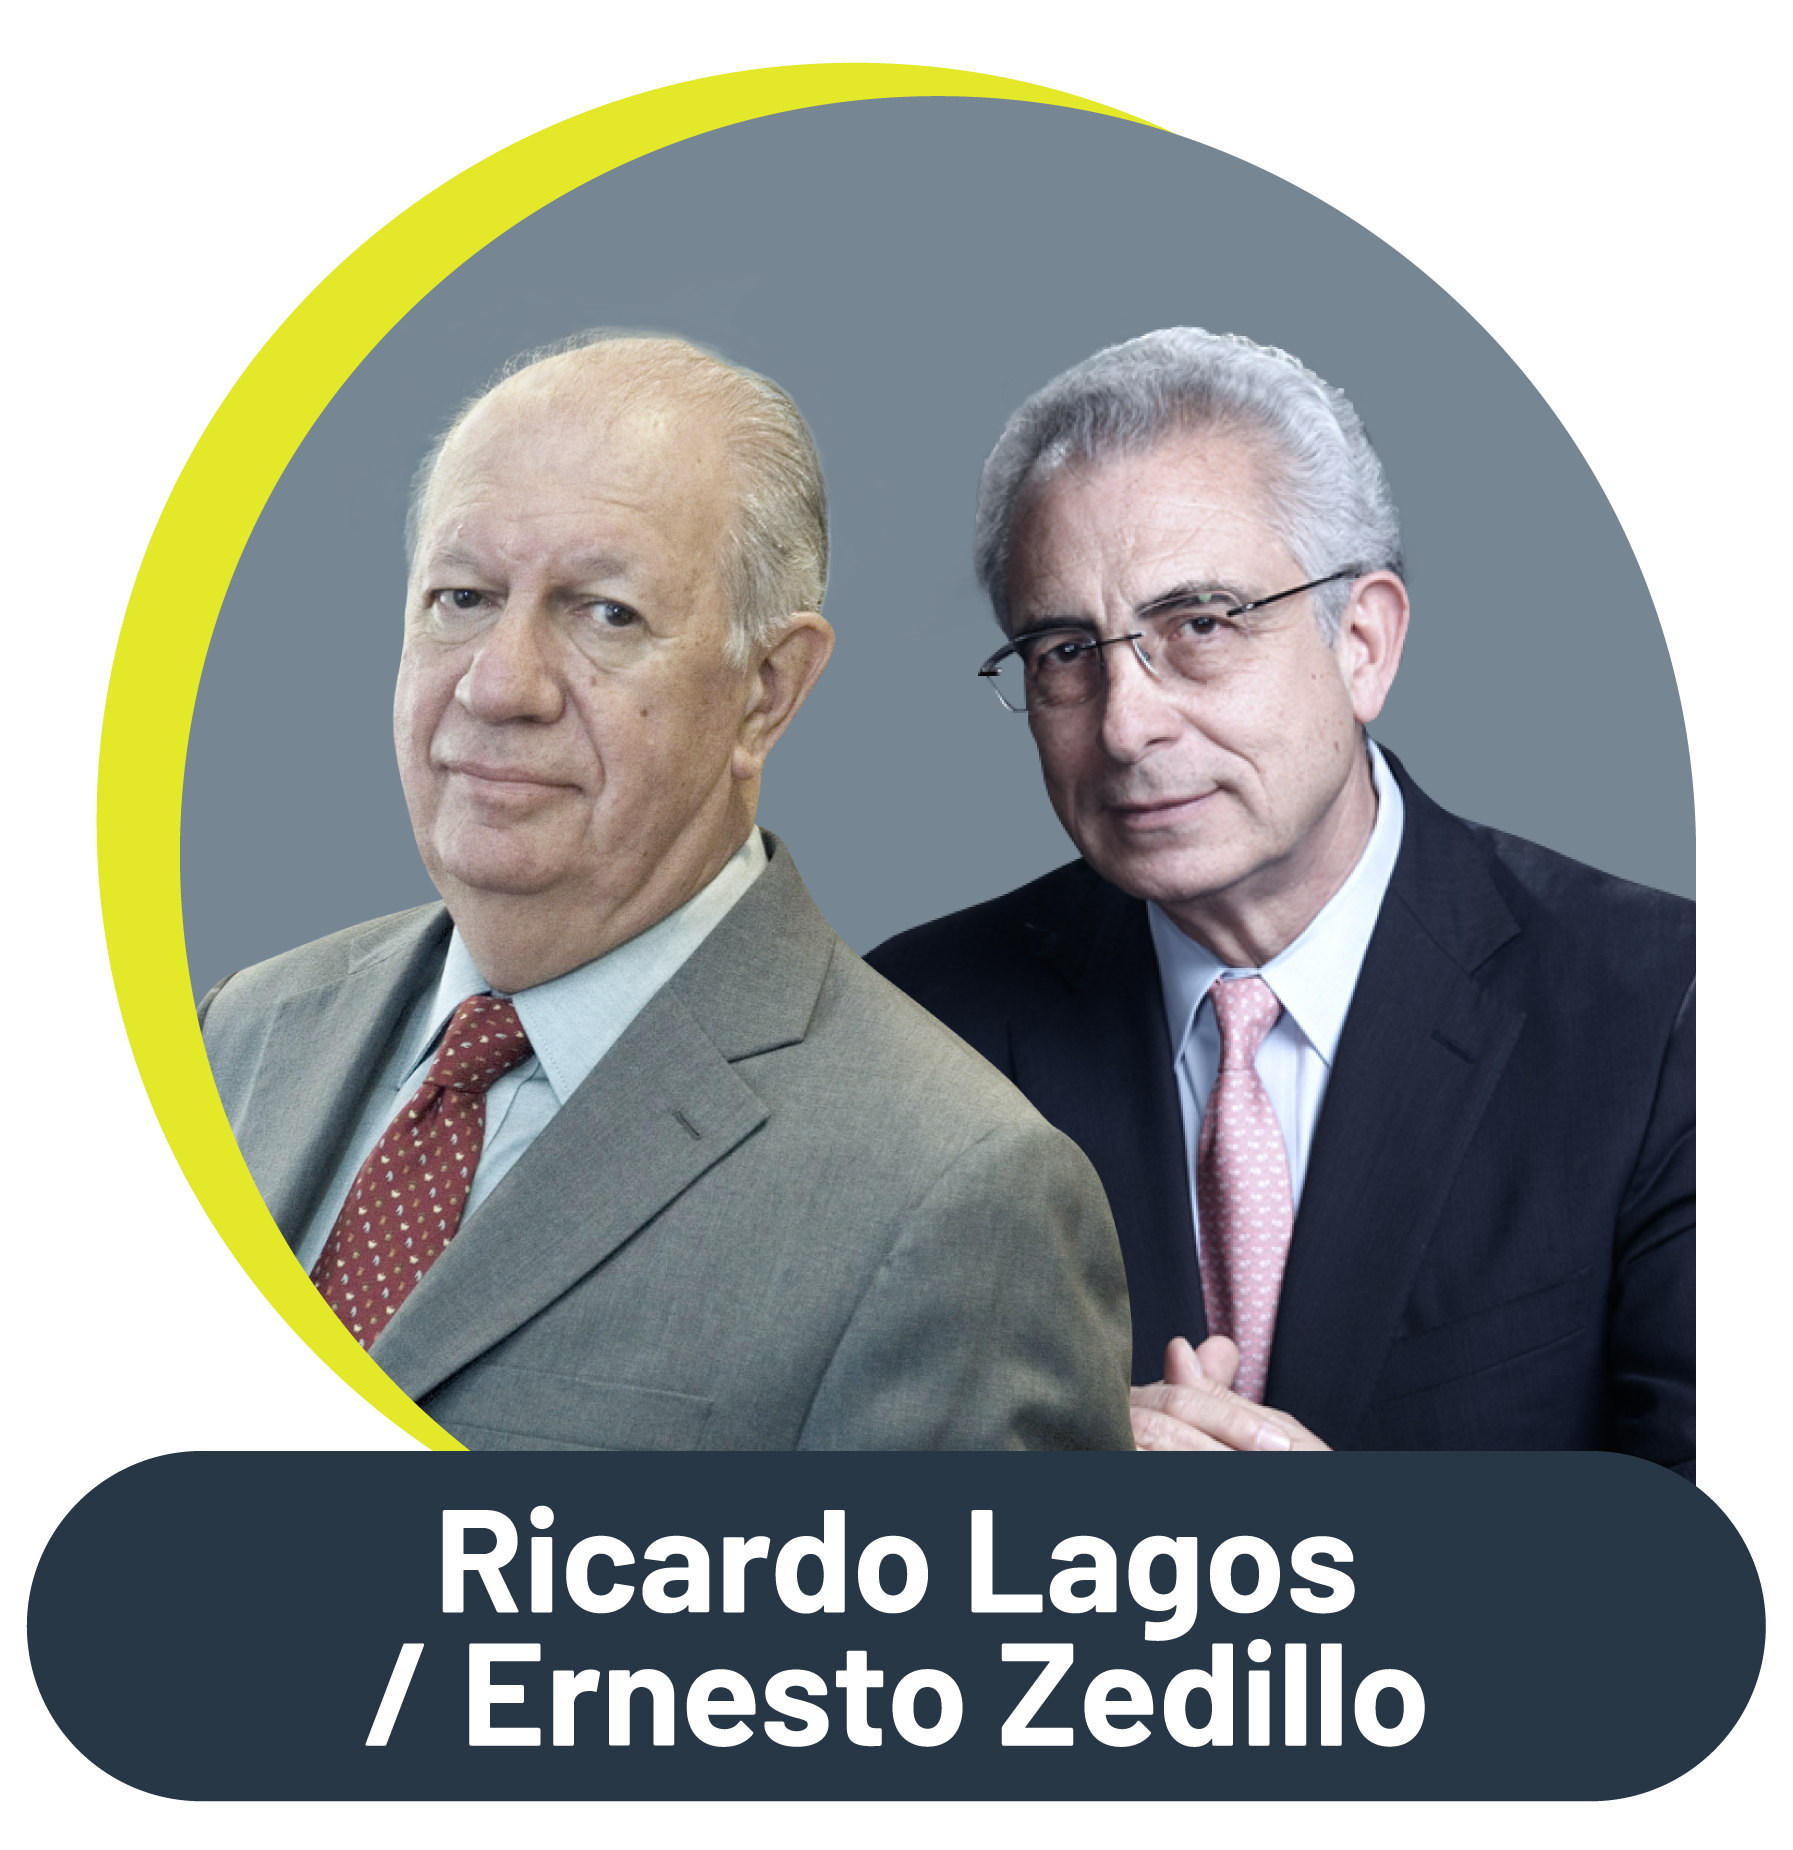 Ricardo Lagos y Ernesto Zedillo hablan de Latinoamérica